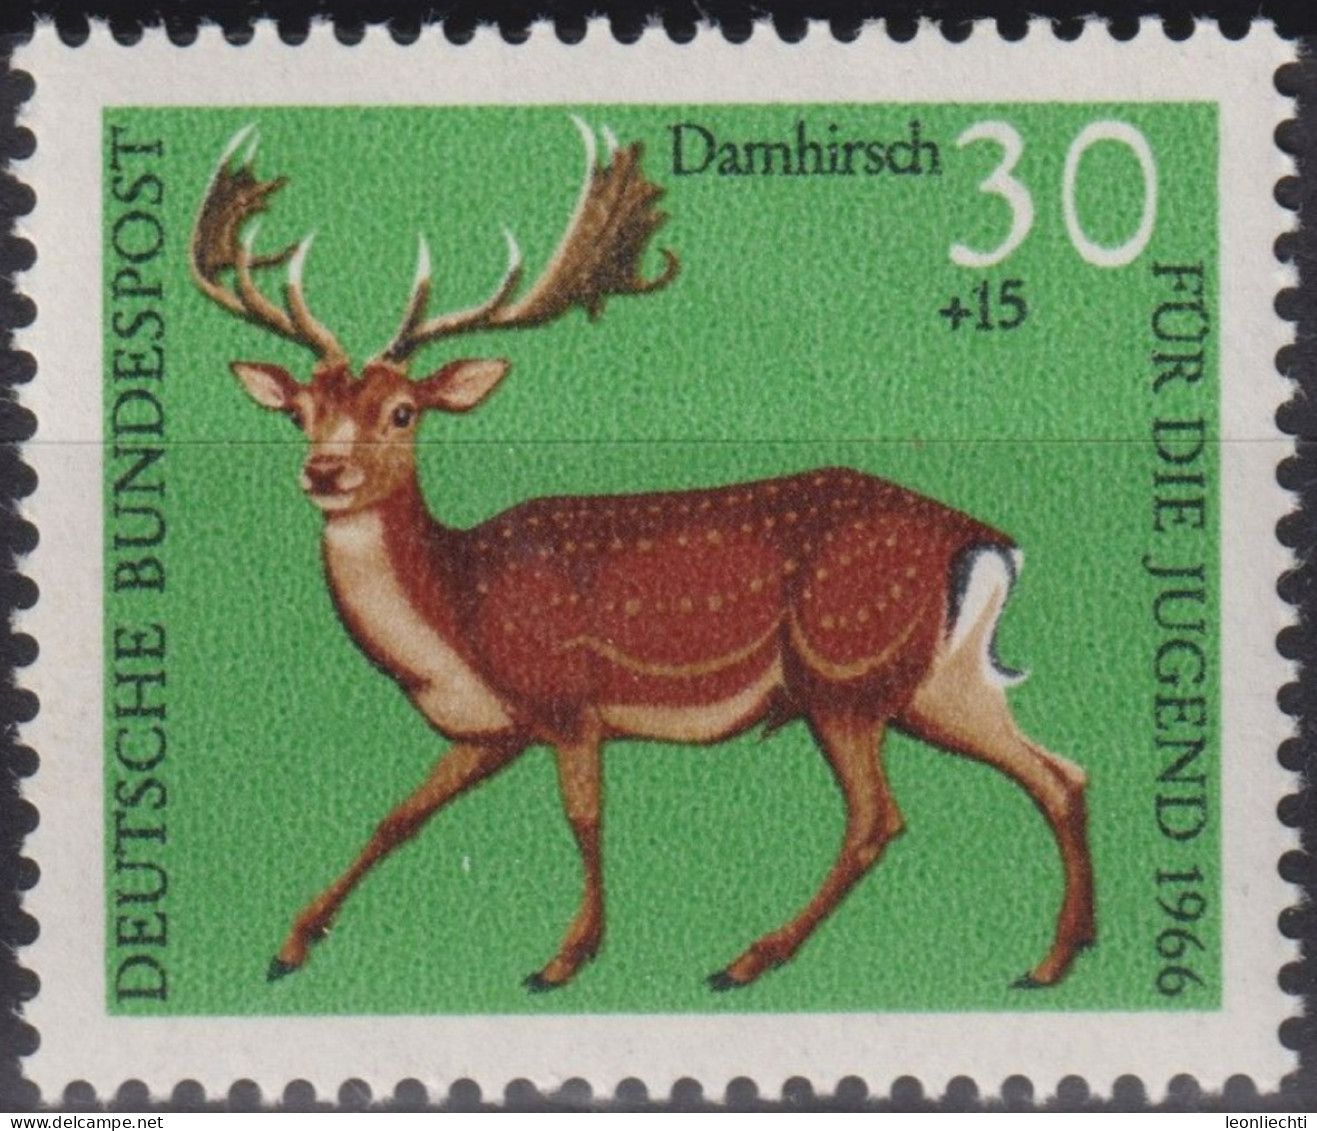 1966 Deutschland > BRD, ** Mi:DE 513, Sn:DE B414, Yt:DE 366, Damhirsch, Waldtiere - Selvaggina